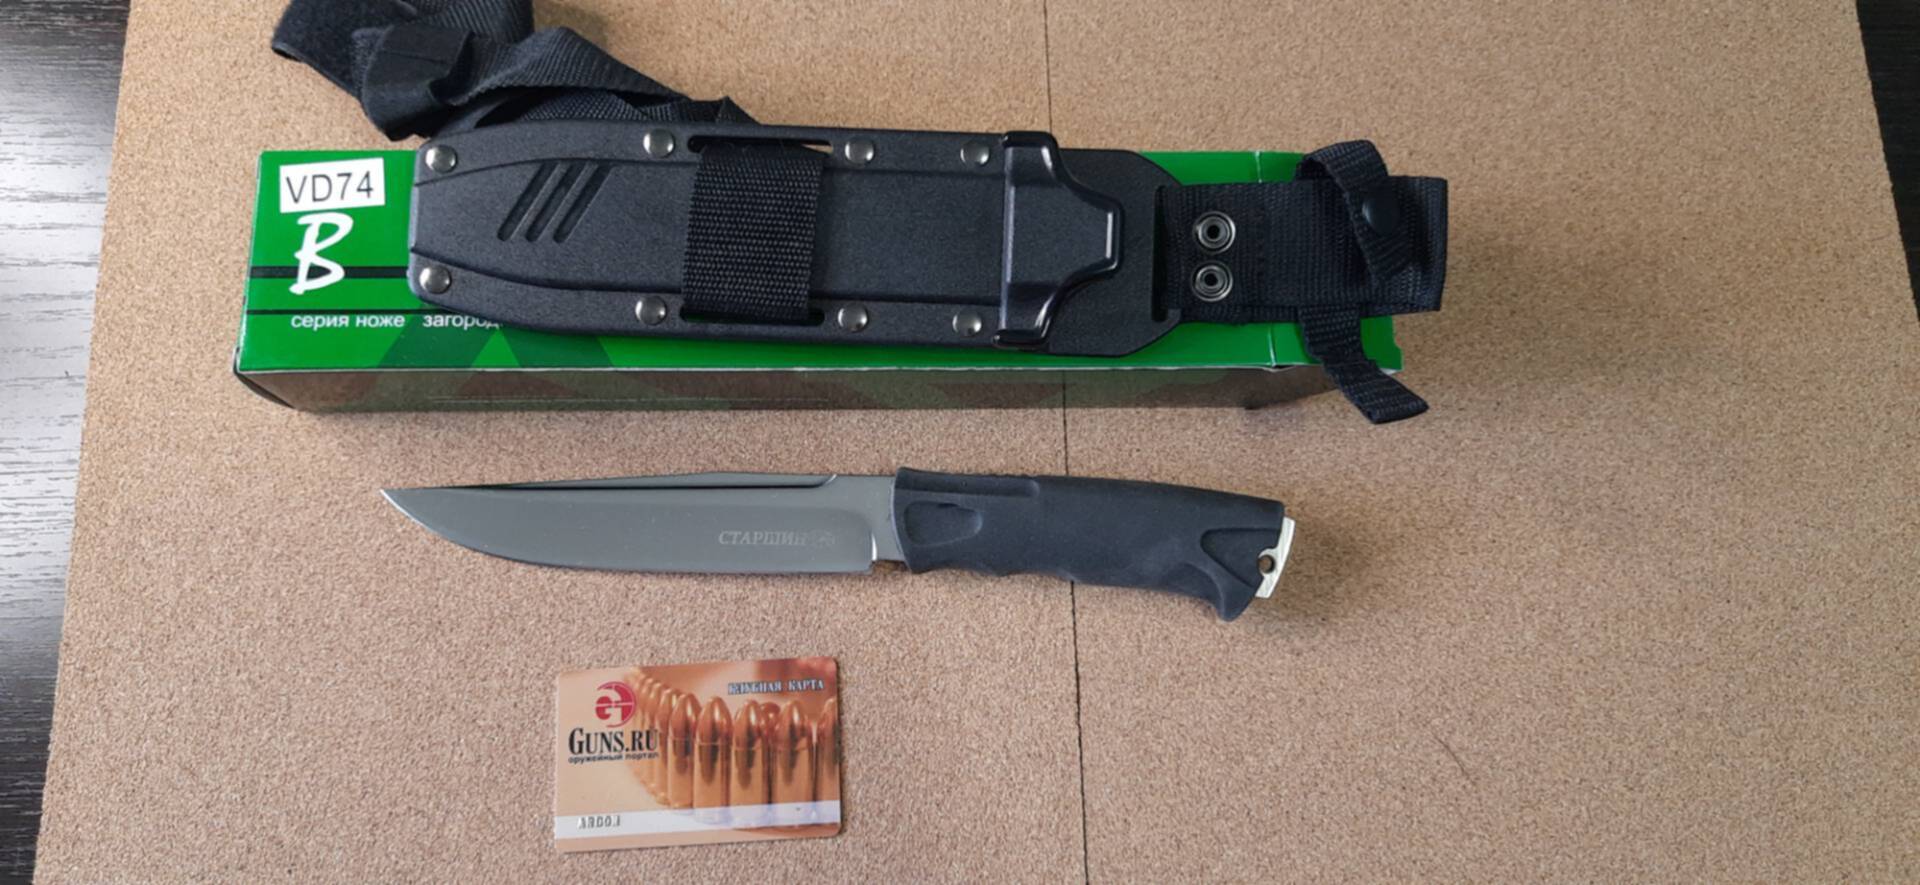 20 ножевых. Luxe sale нож. Распродажа ножей.